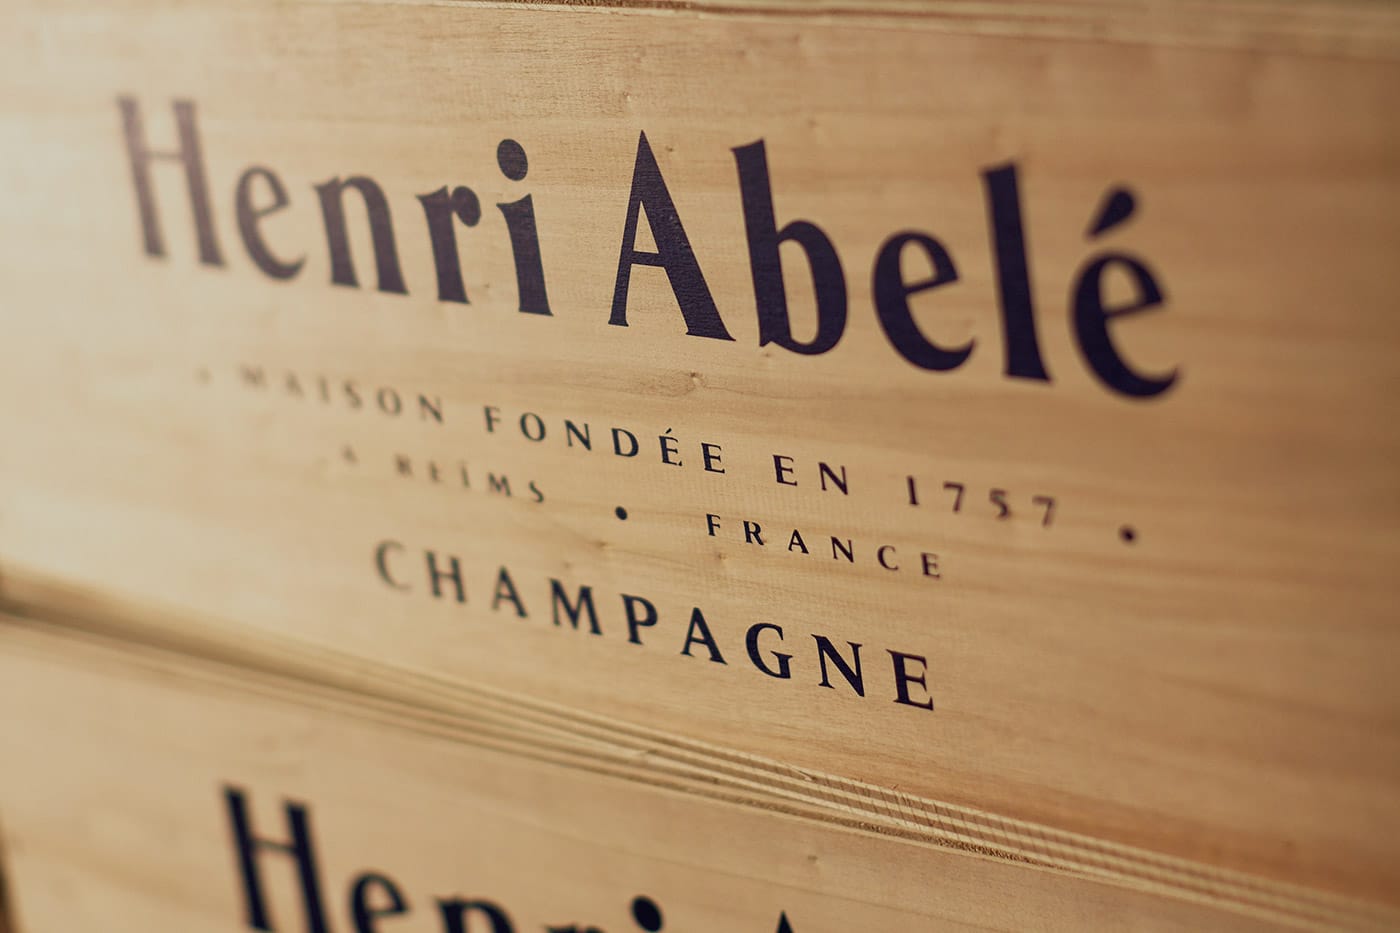 Caja de vino Henri Abele Champagne